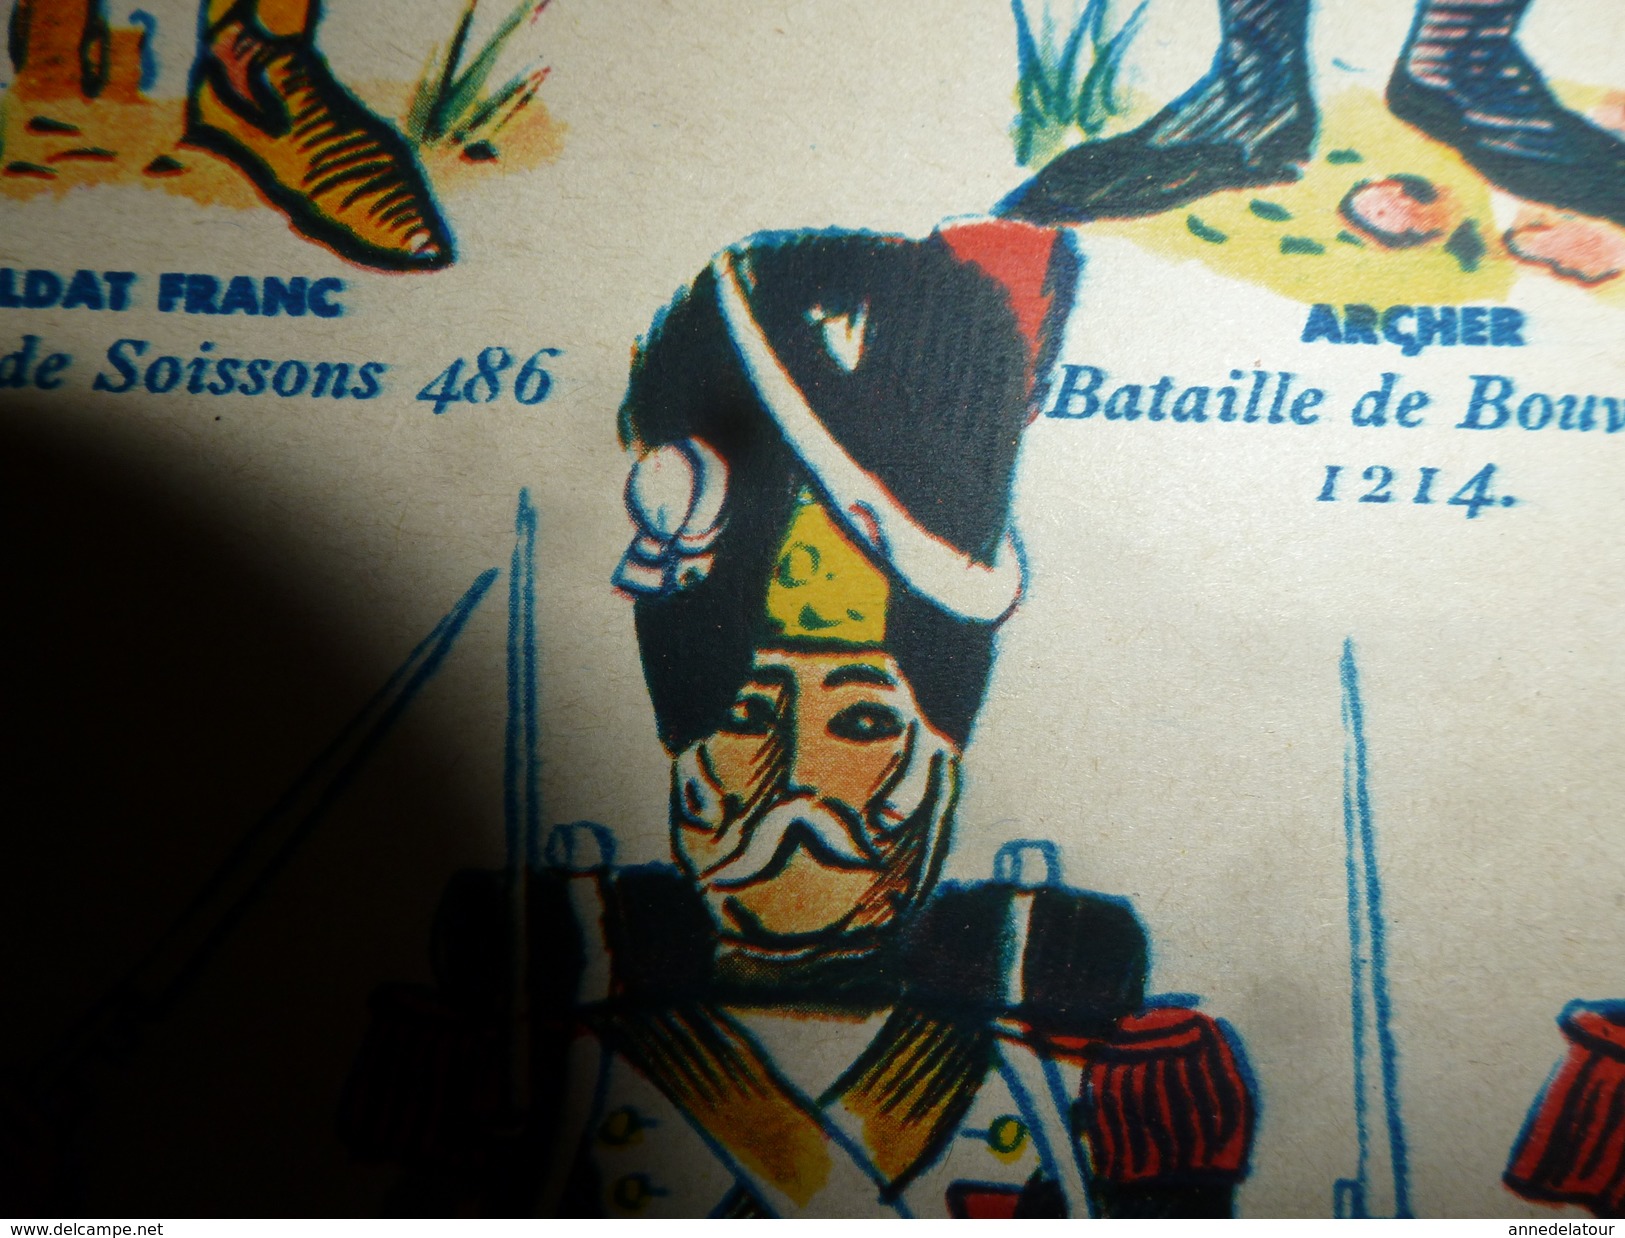 1939  Planche de couleur (uniformes) LE FANTASSIN FRANCAIS A TRAVERS LES SIECLES  (dimension 55.0 cm x 35.5 cm )